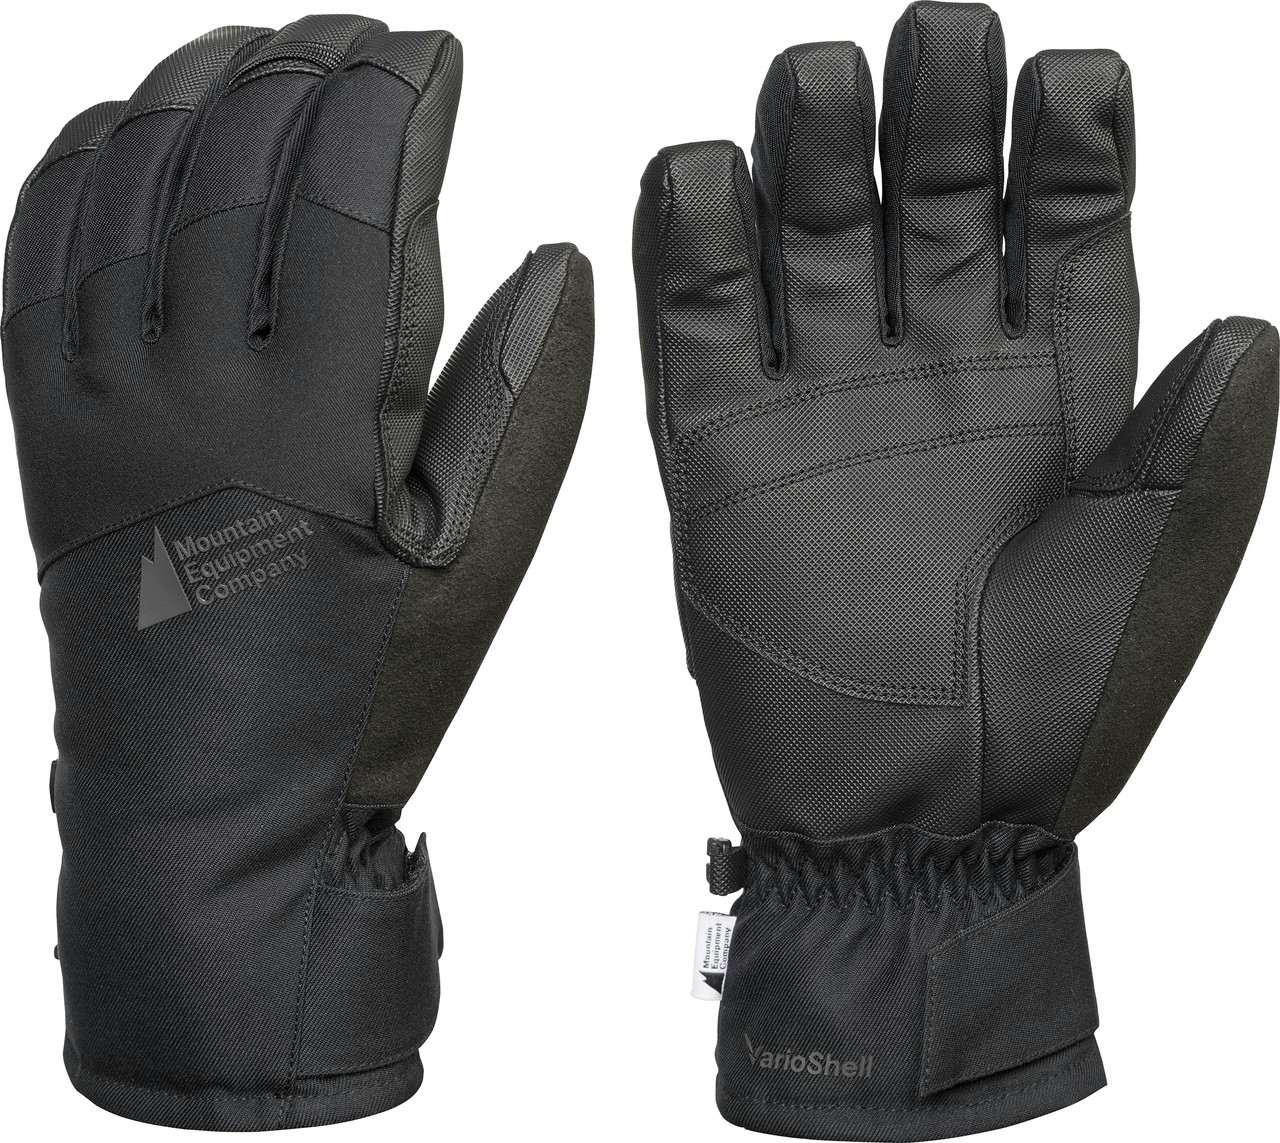 T3 Warmest Waterproof Ski Gloves Black